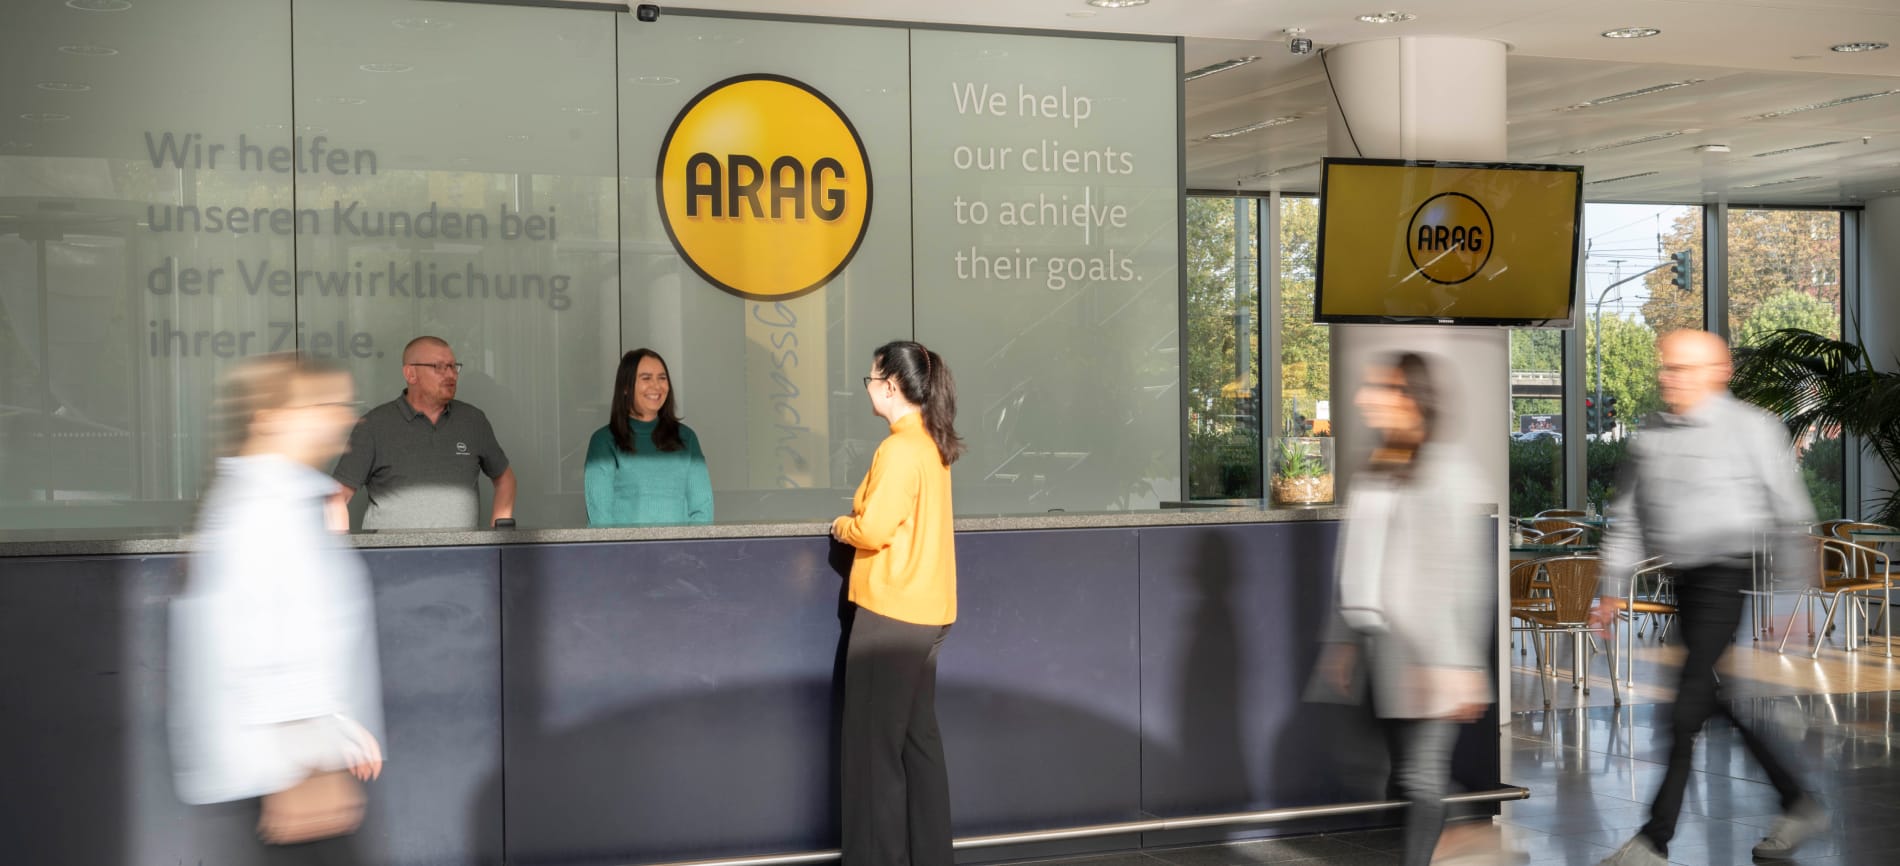 Unsere Kolleginnen und Kollegen vom Empfang heißen dich willkommen bei der ARAG!